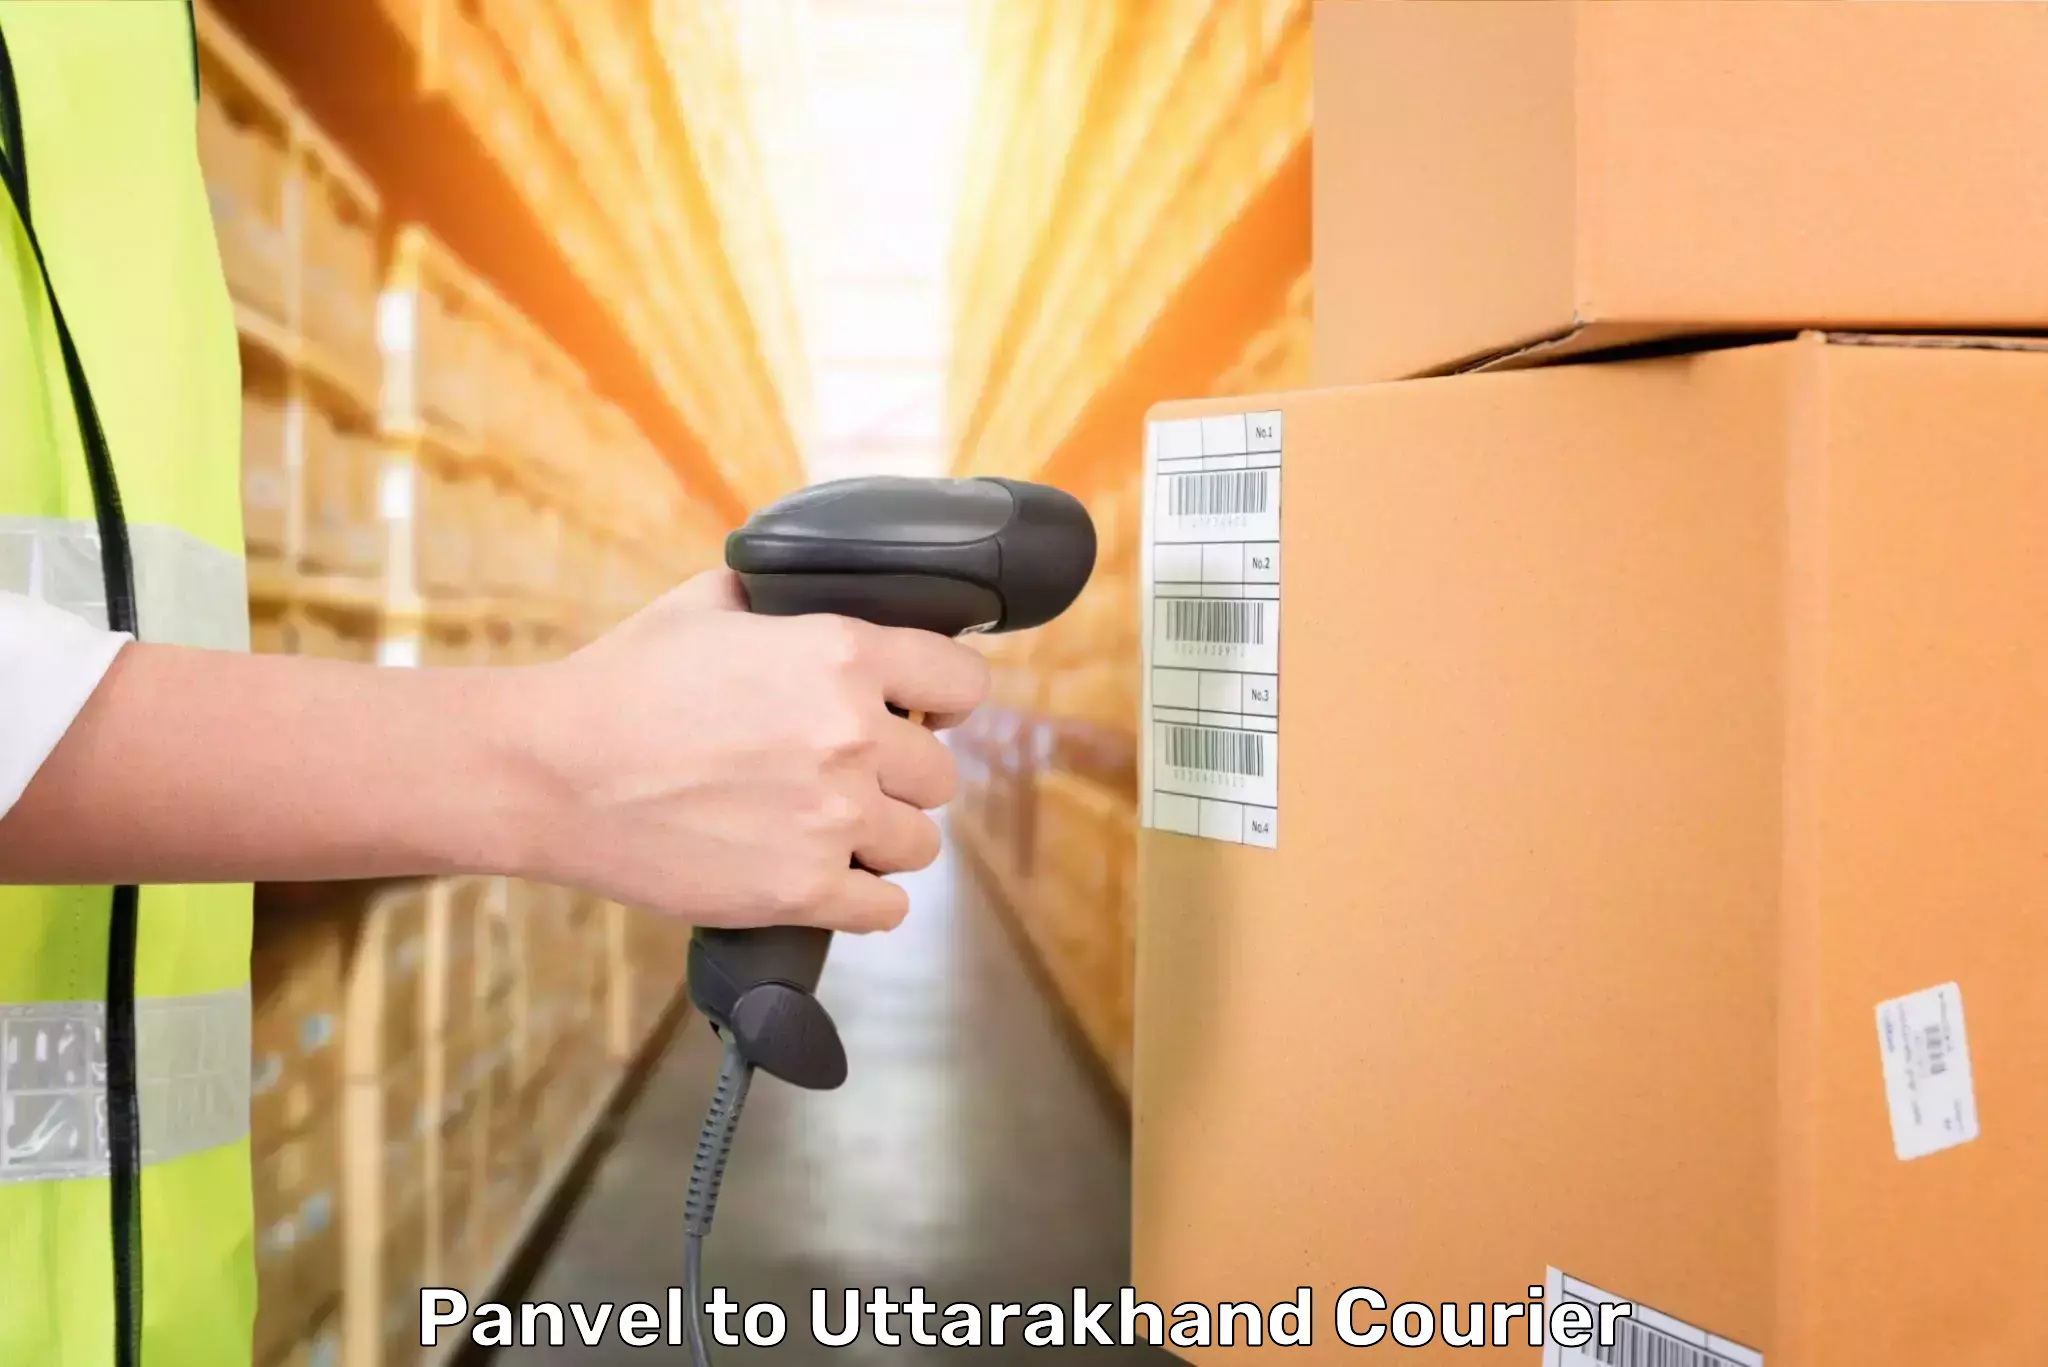 Luggage shipment tracking Panvel to Dwarahat